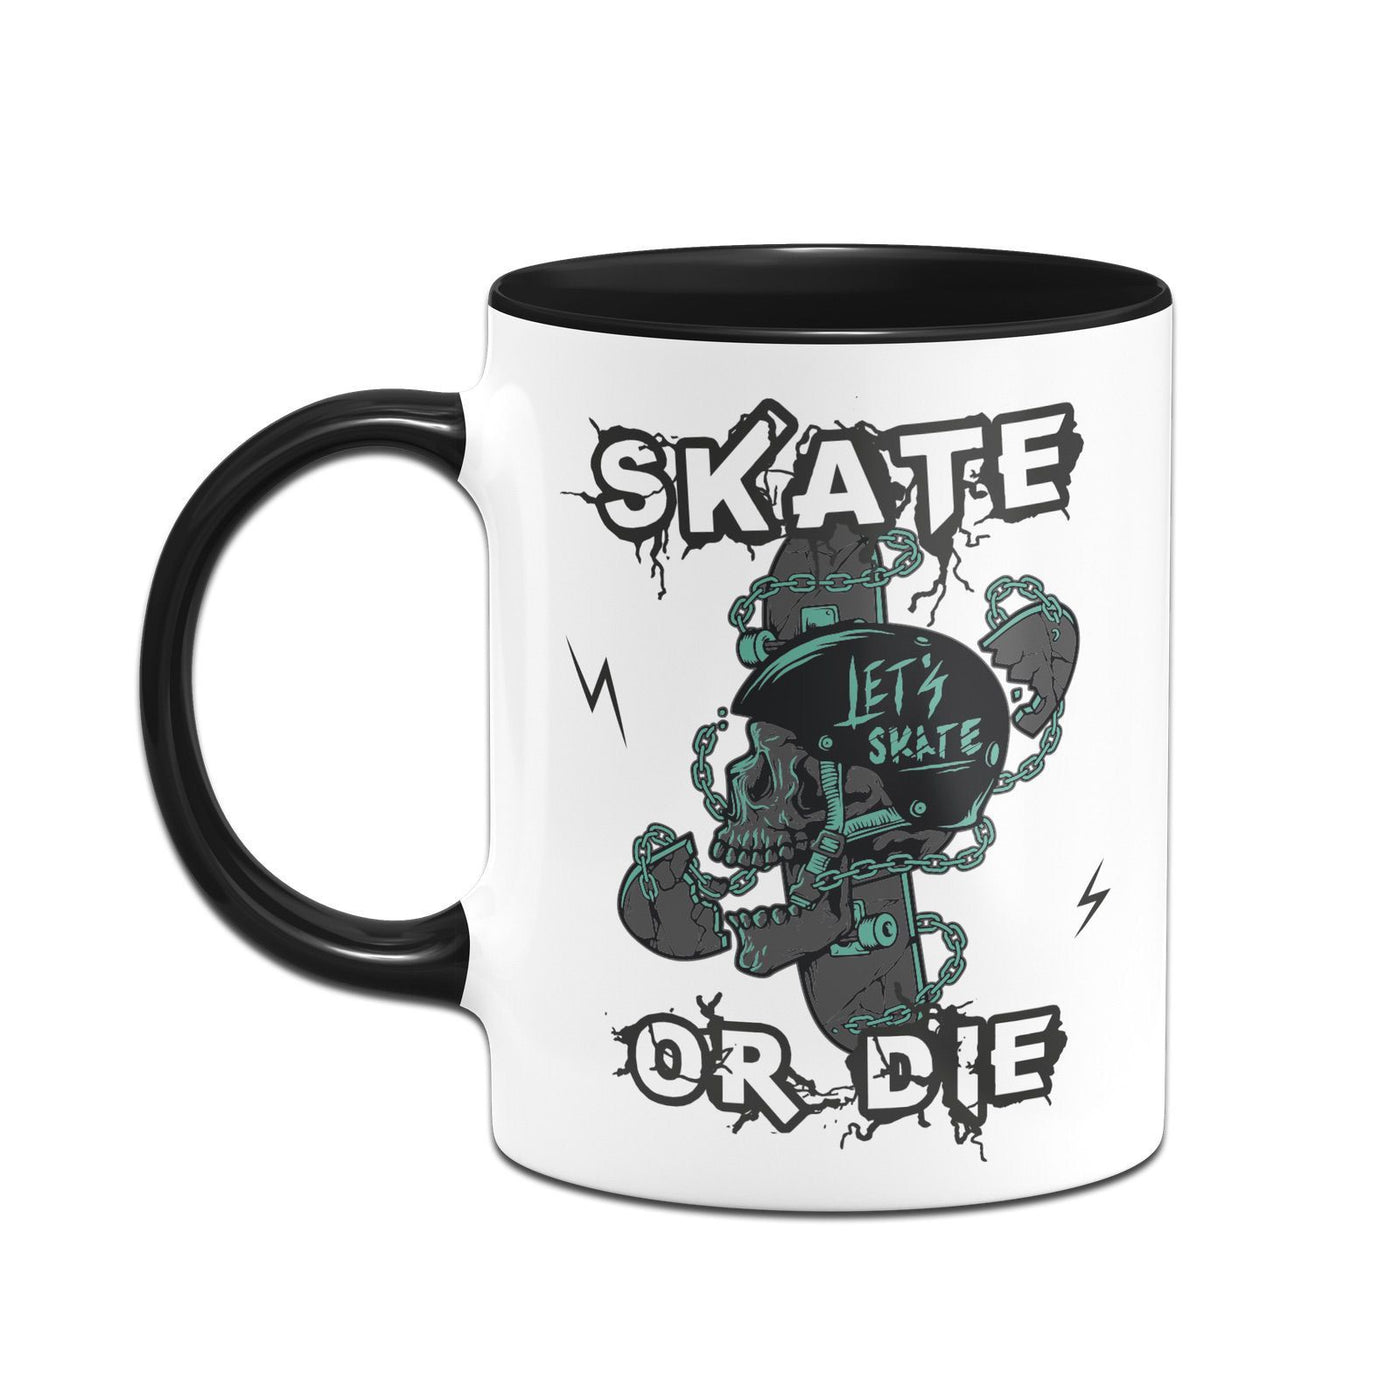 Bild: Tasse - Skate or die Geschenkidee